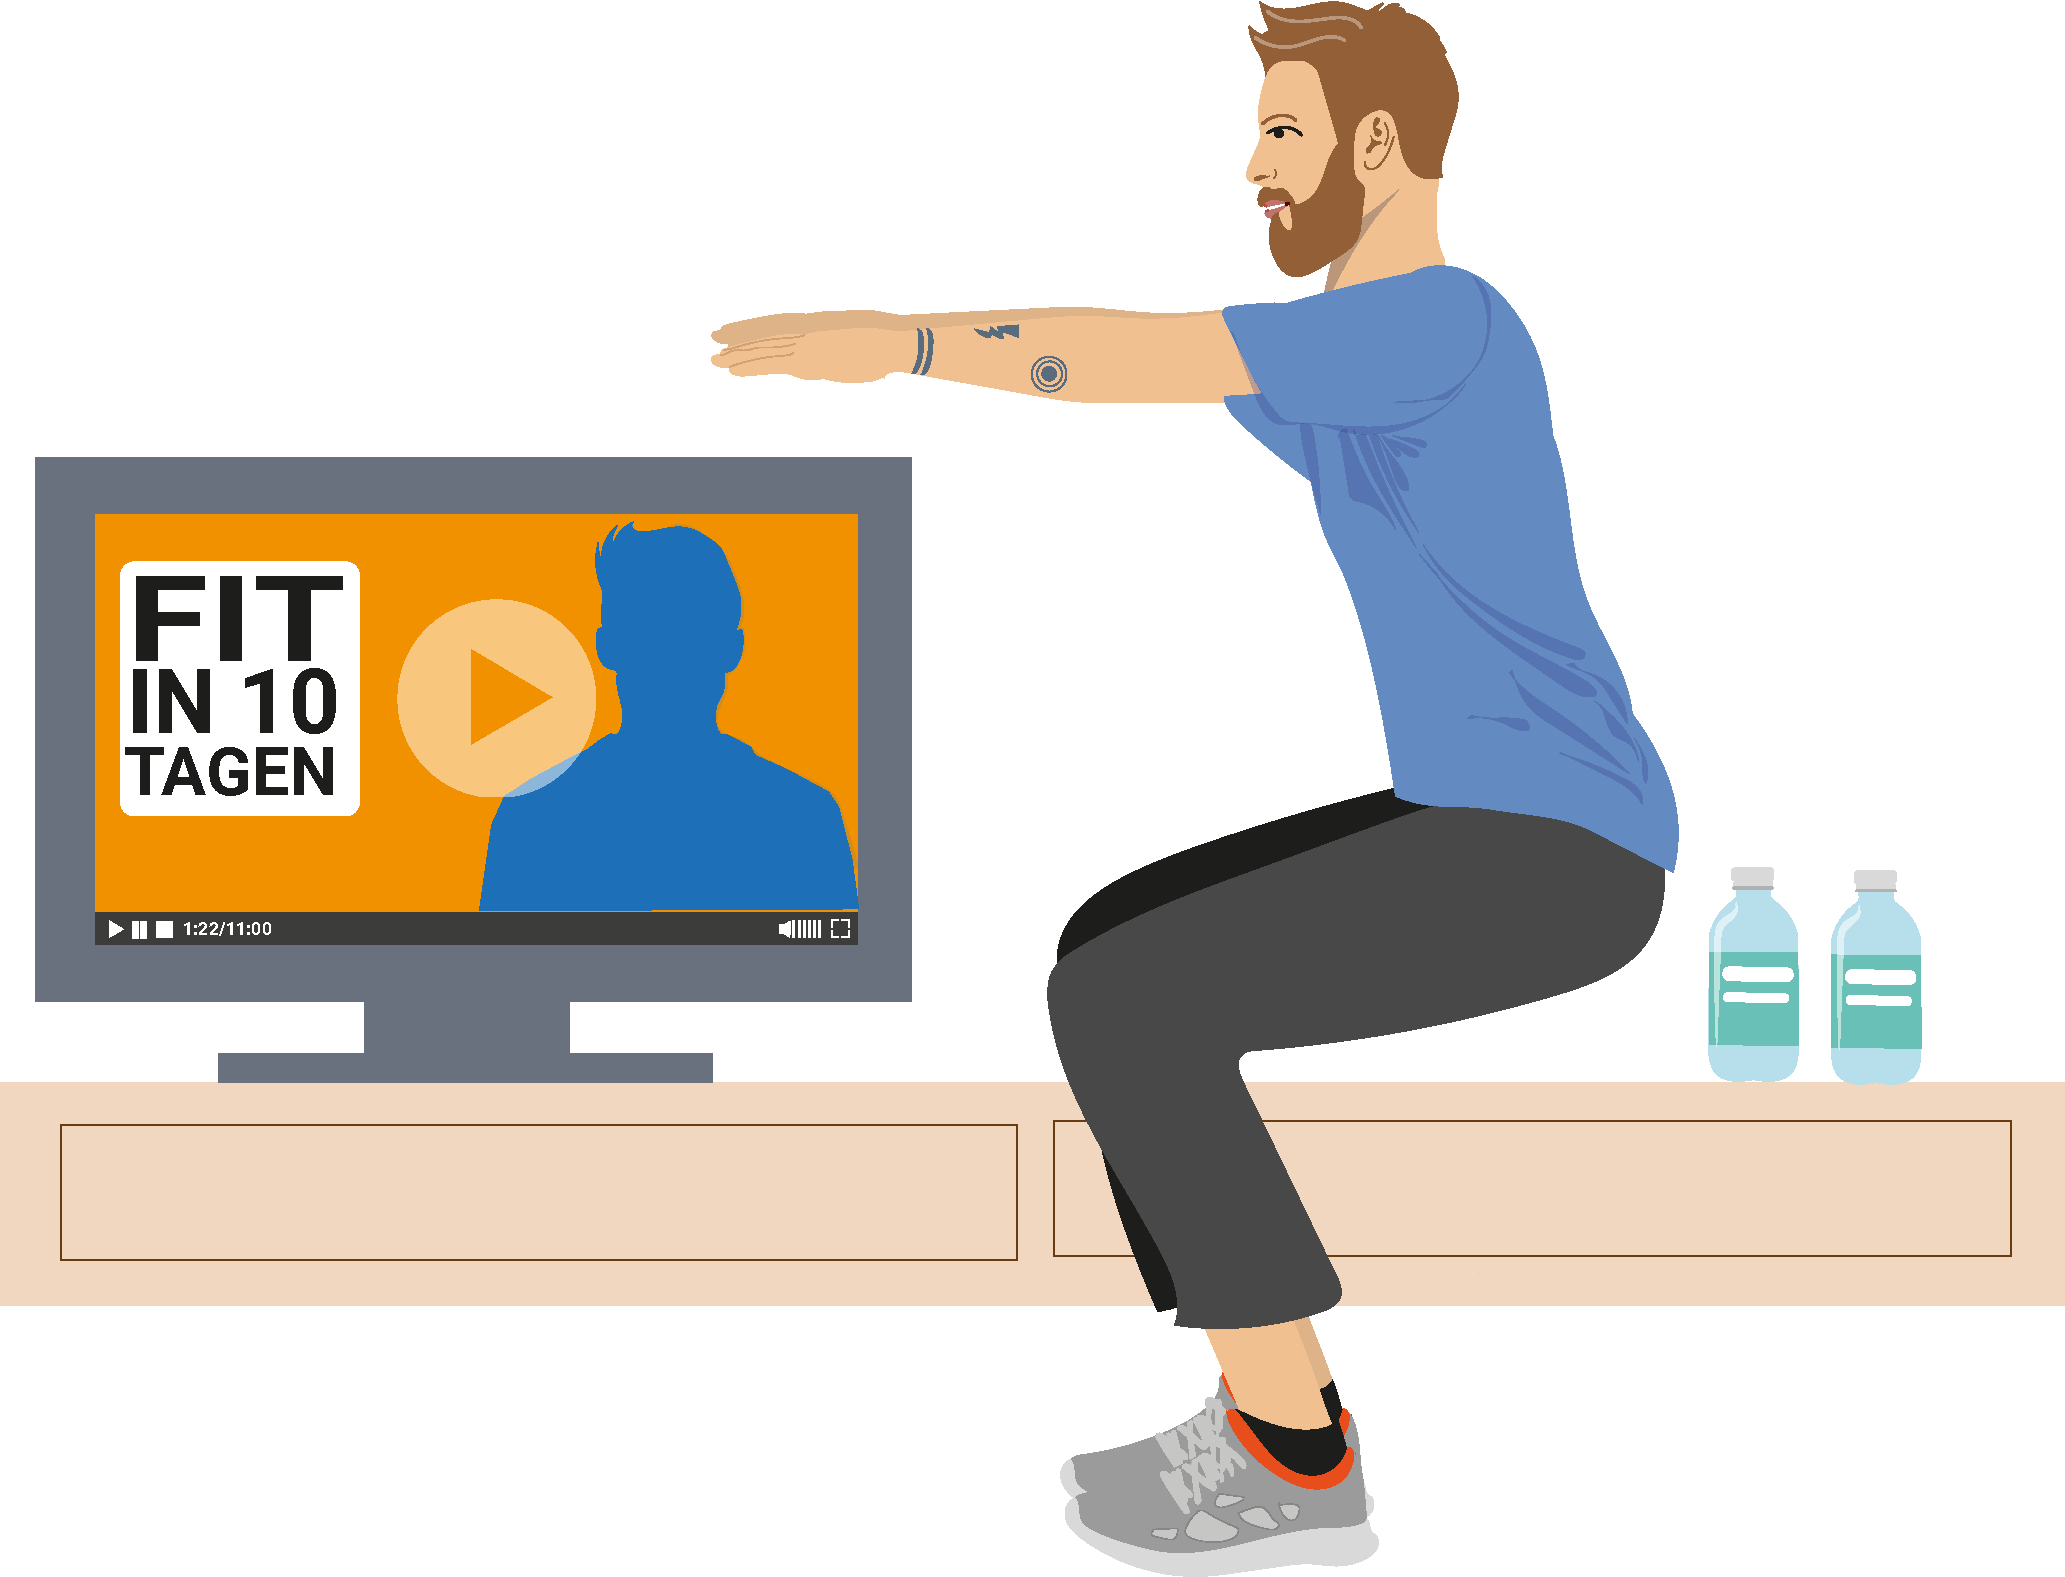 Lernmedien Illustration | Weiterbildung, Elternarbeit: Vater absolviert ein Workout nach Traningstipps in einem Fitness-Video.